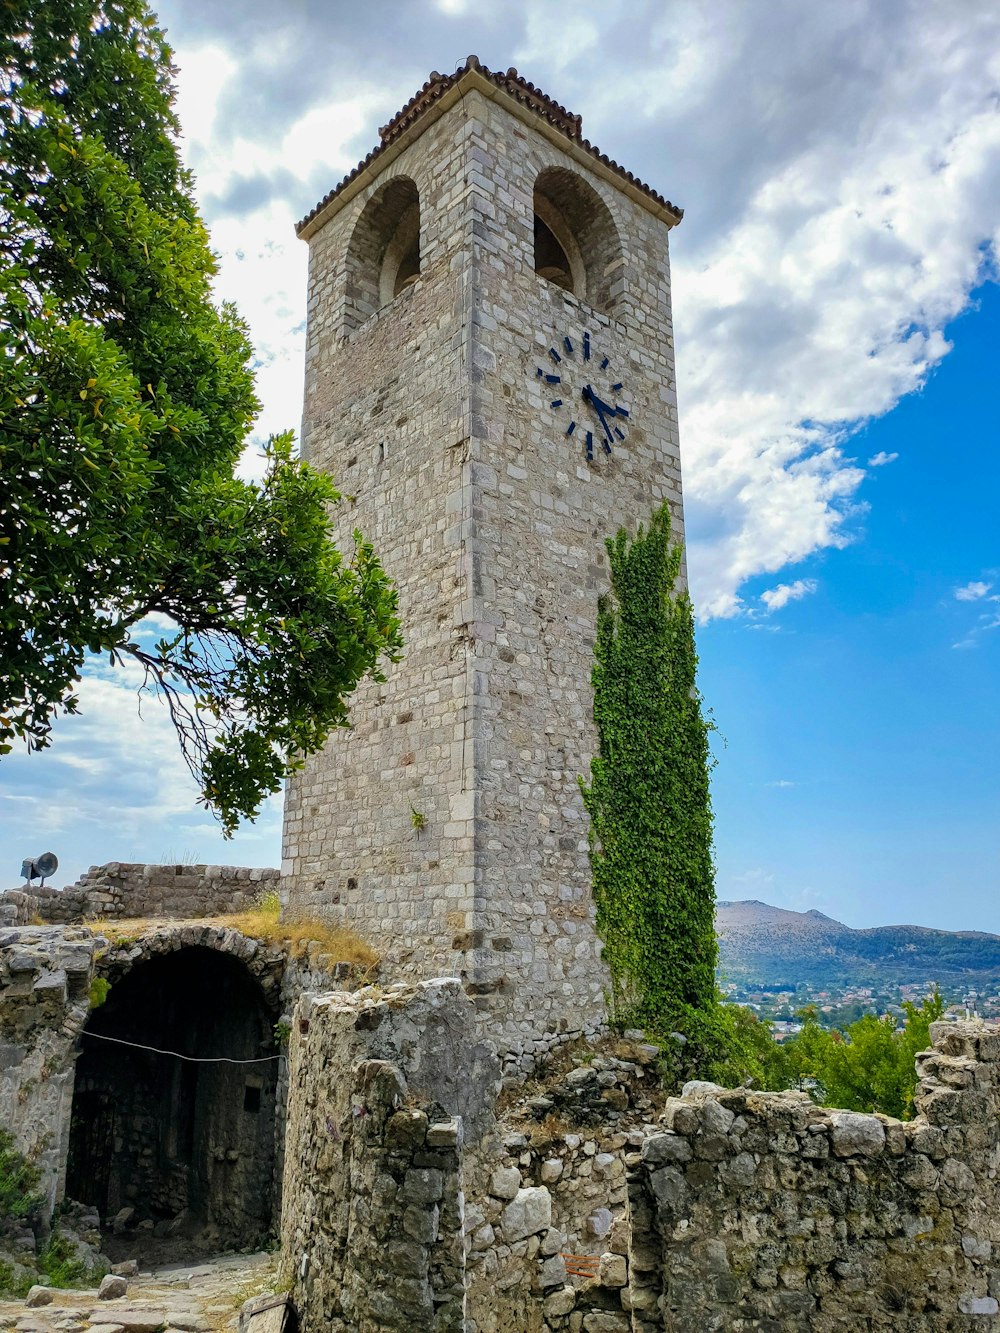 uma torre de pedra com um relógio no topo dela